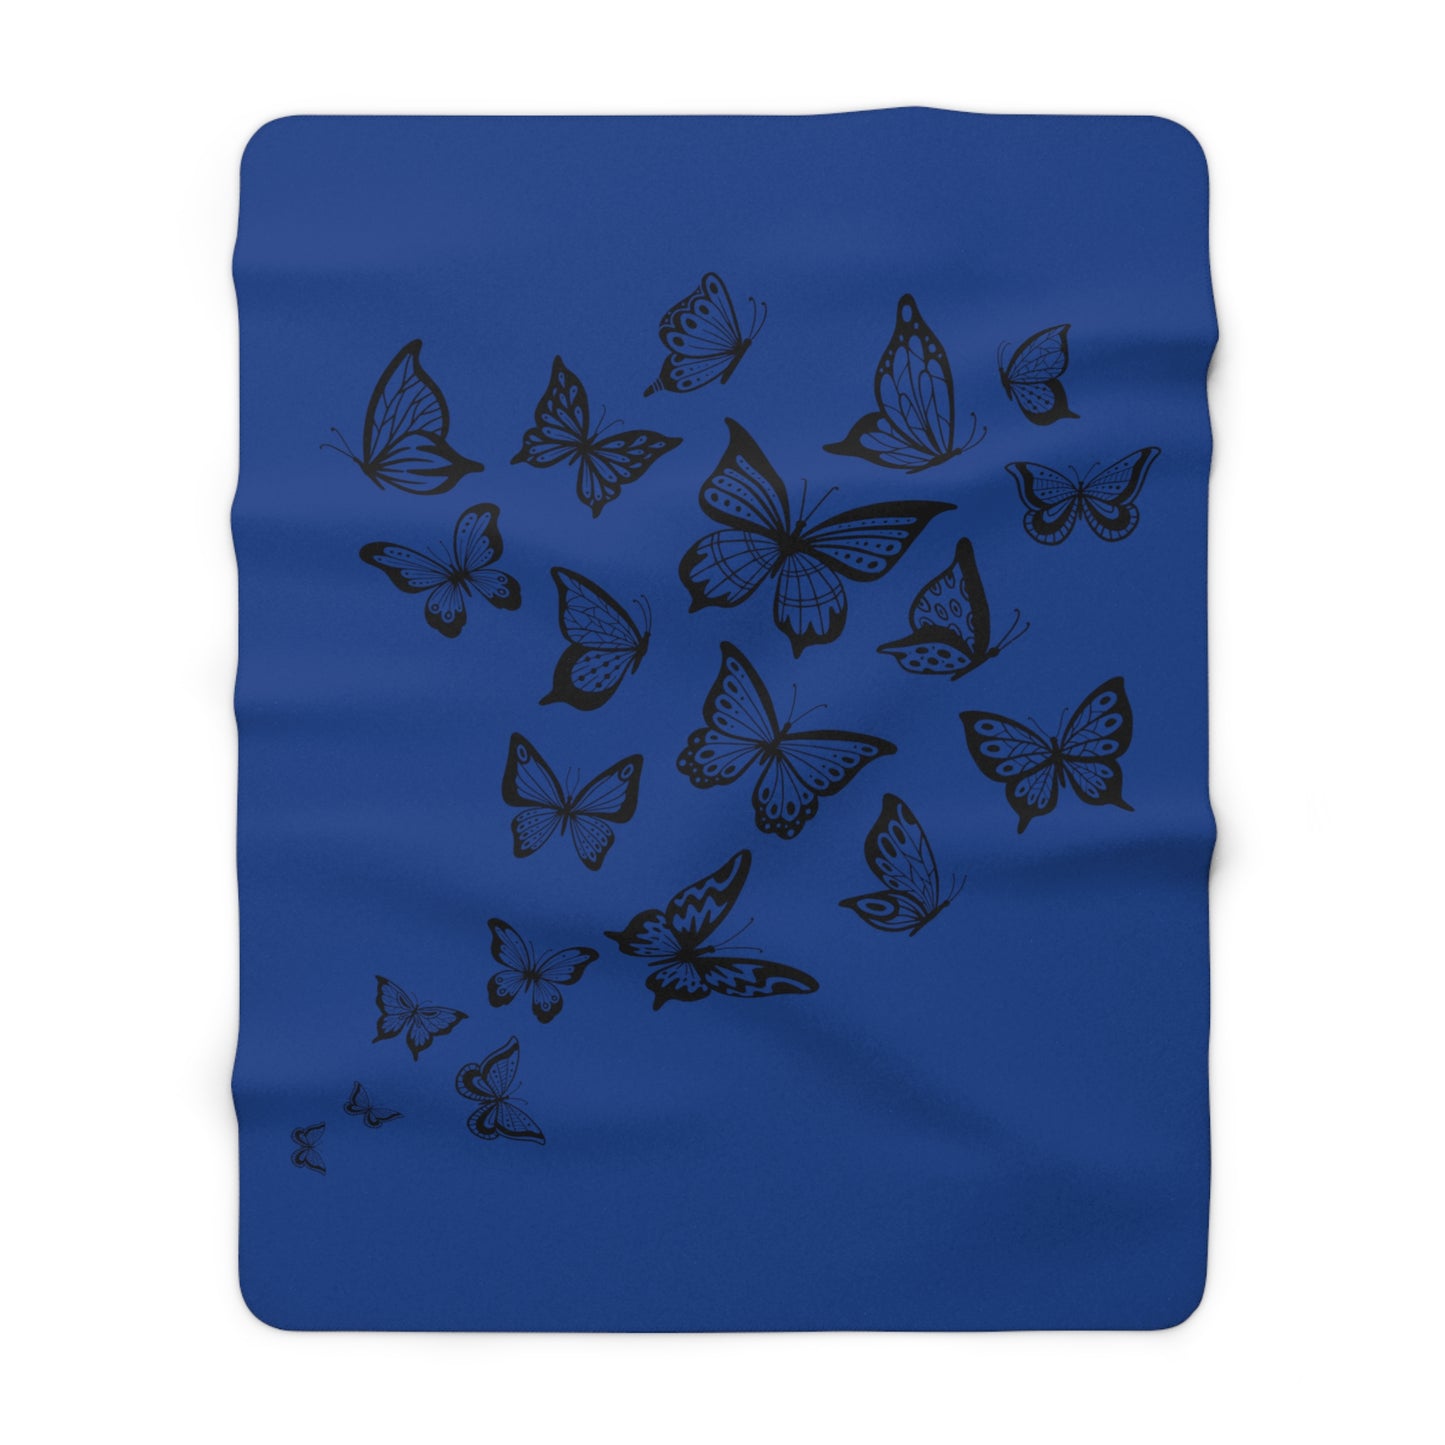 Schmetterling Dunkel Blau-Sofadecke, 3D-Druck, Tier-Couchdecke, Fleecedecke, Tagesdecke, weich, flauschig, warm, Bettdecken, kuschelige Decke für Mädchen und Jungen (127 x 152.4 cm)